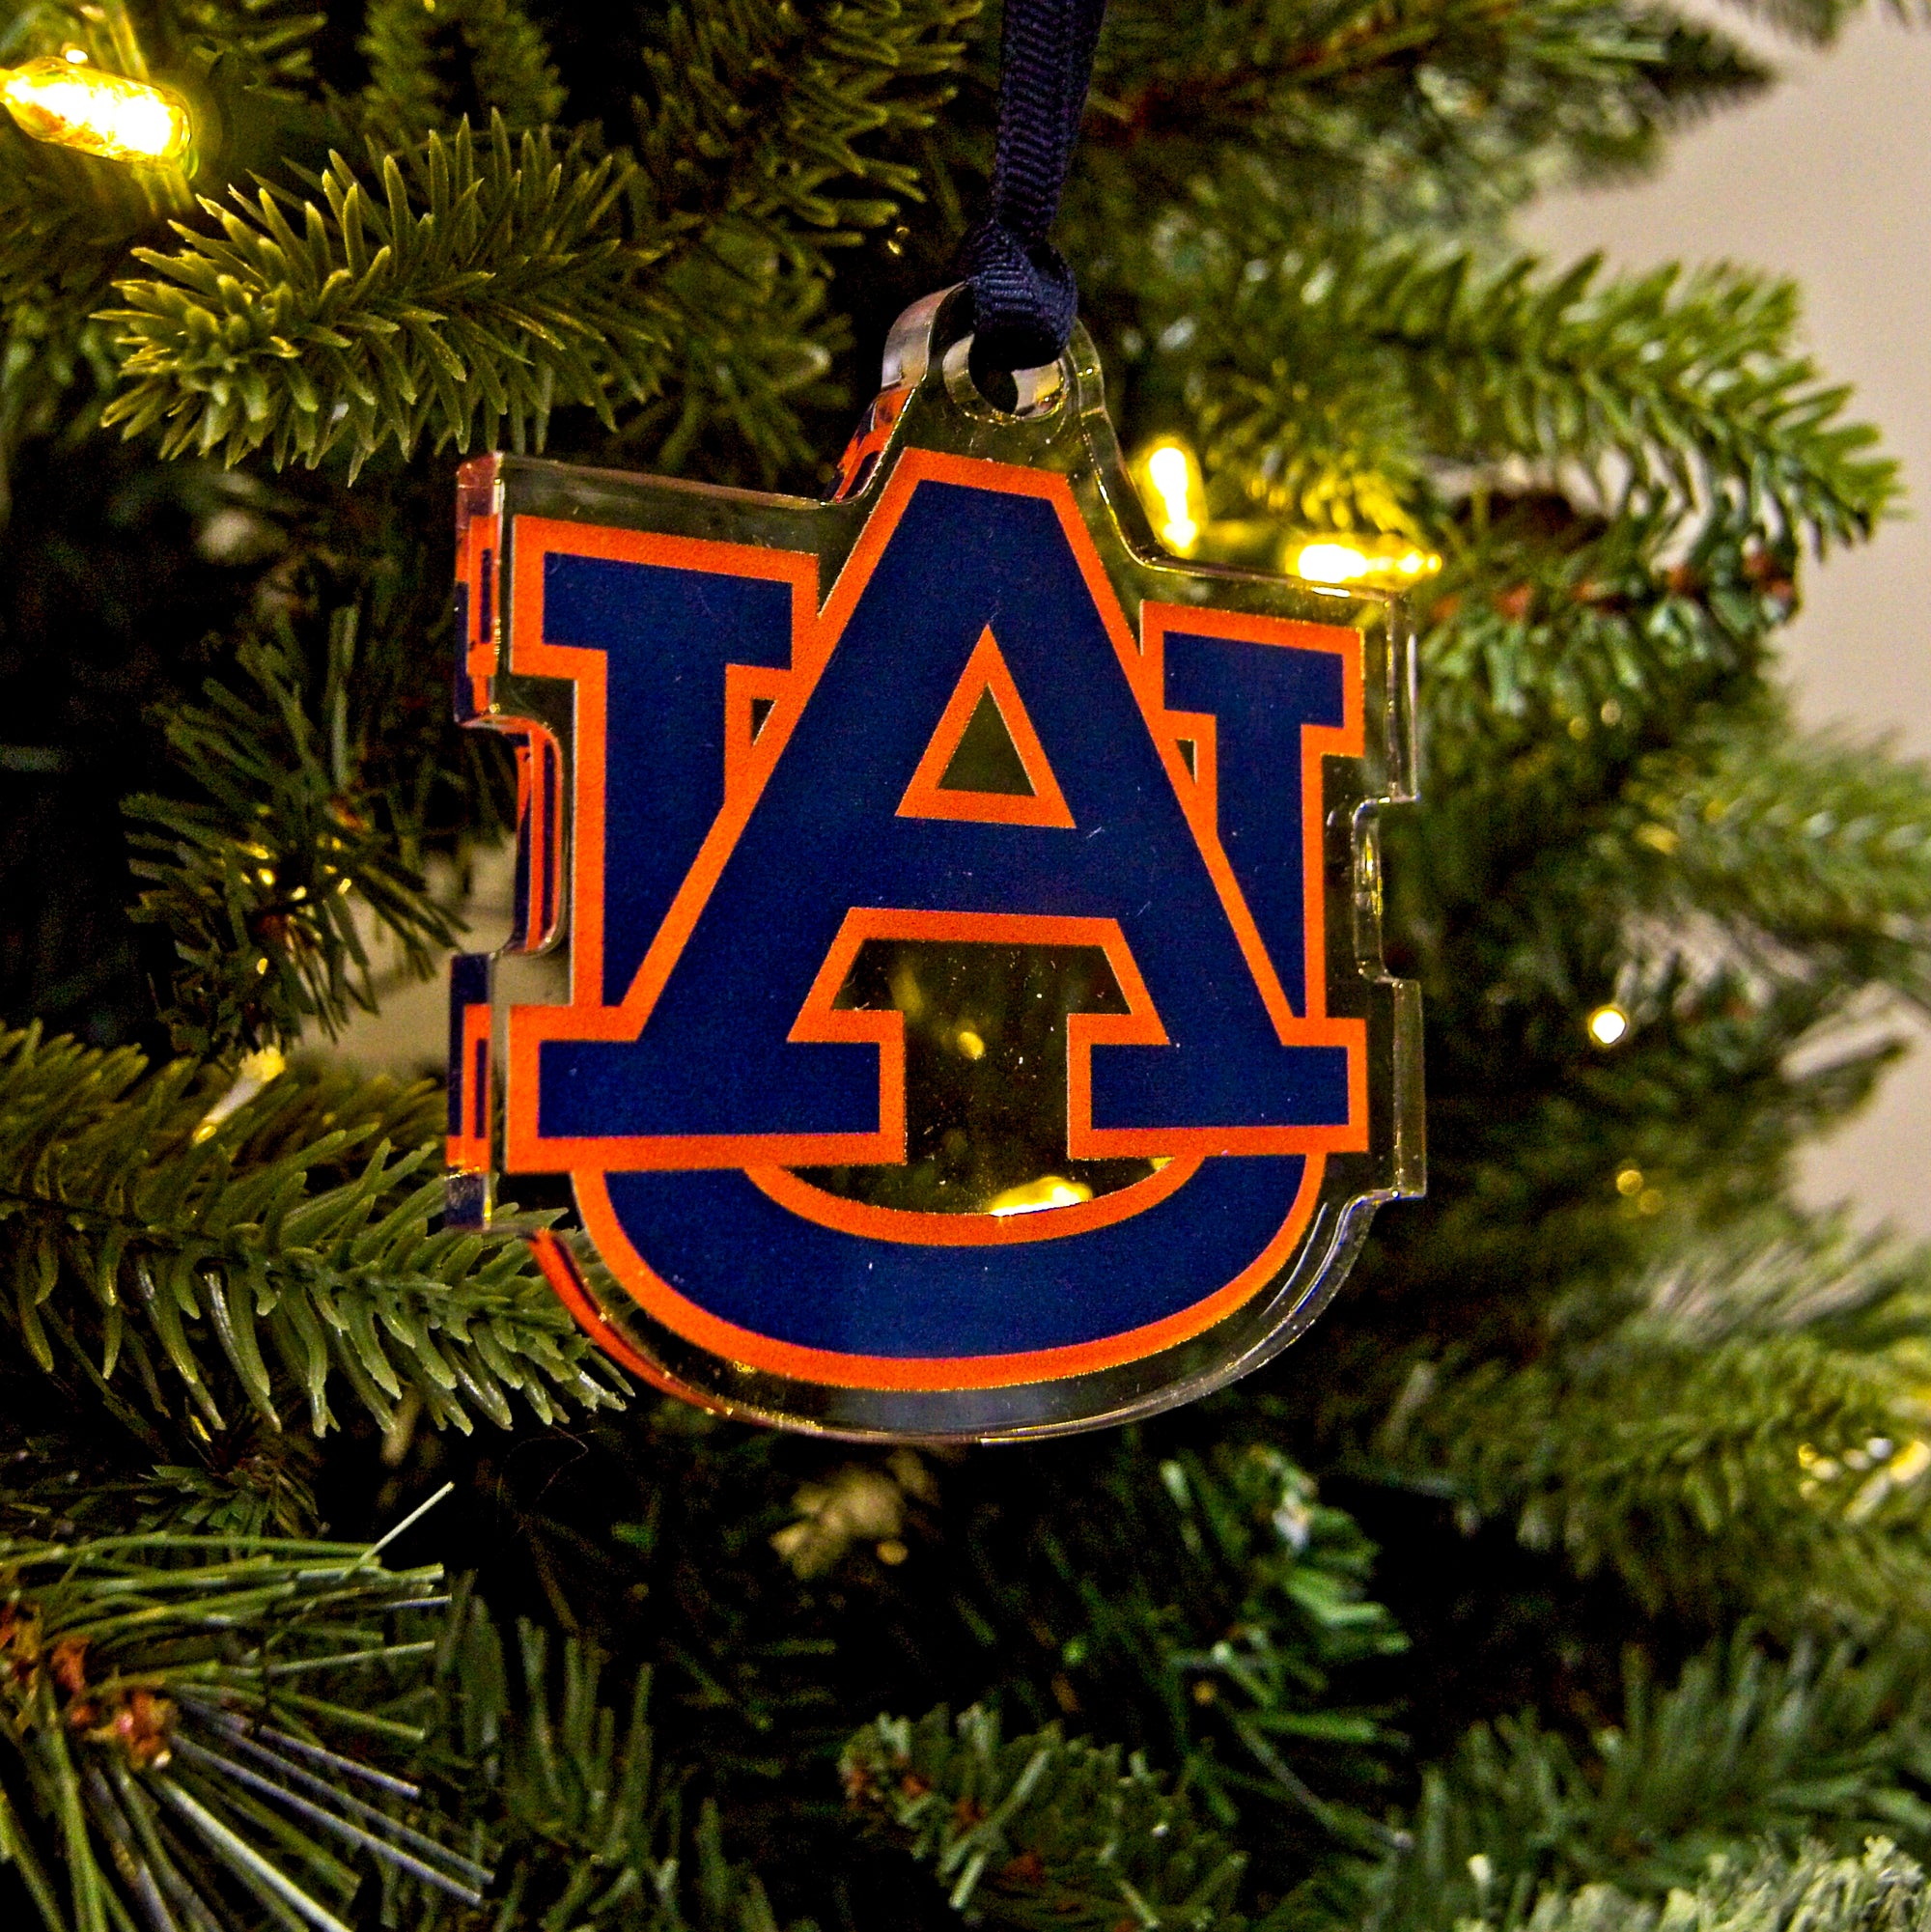 Auburn Tigers - Auburn Ornament & Bag Tag